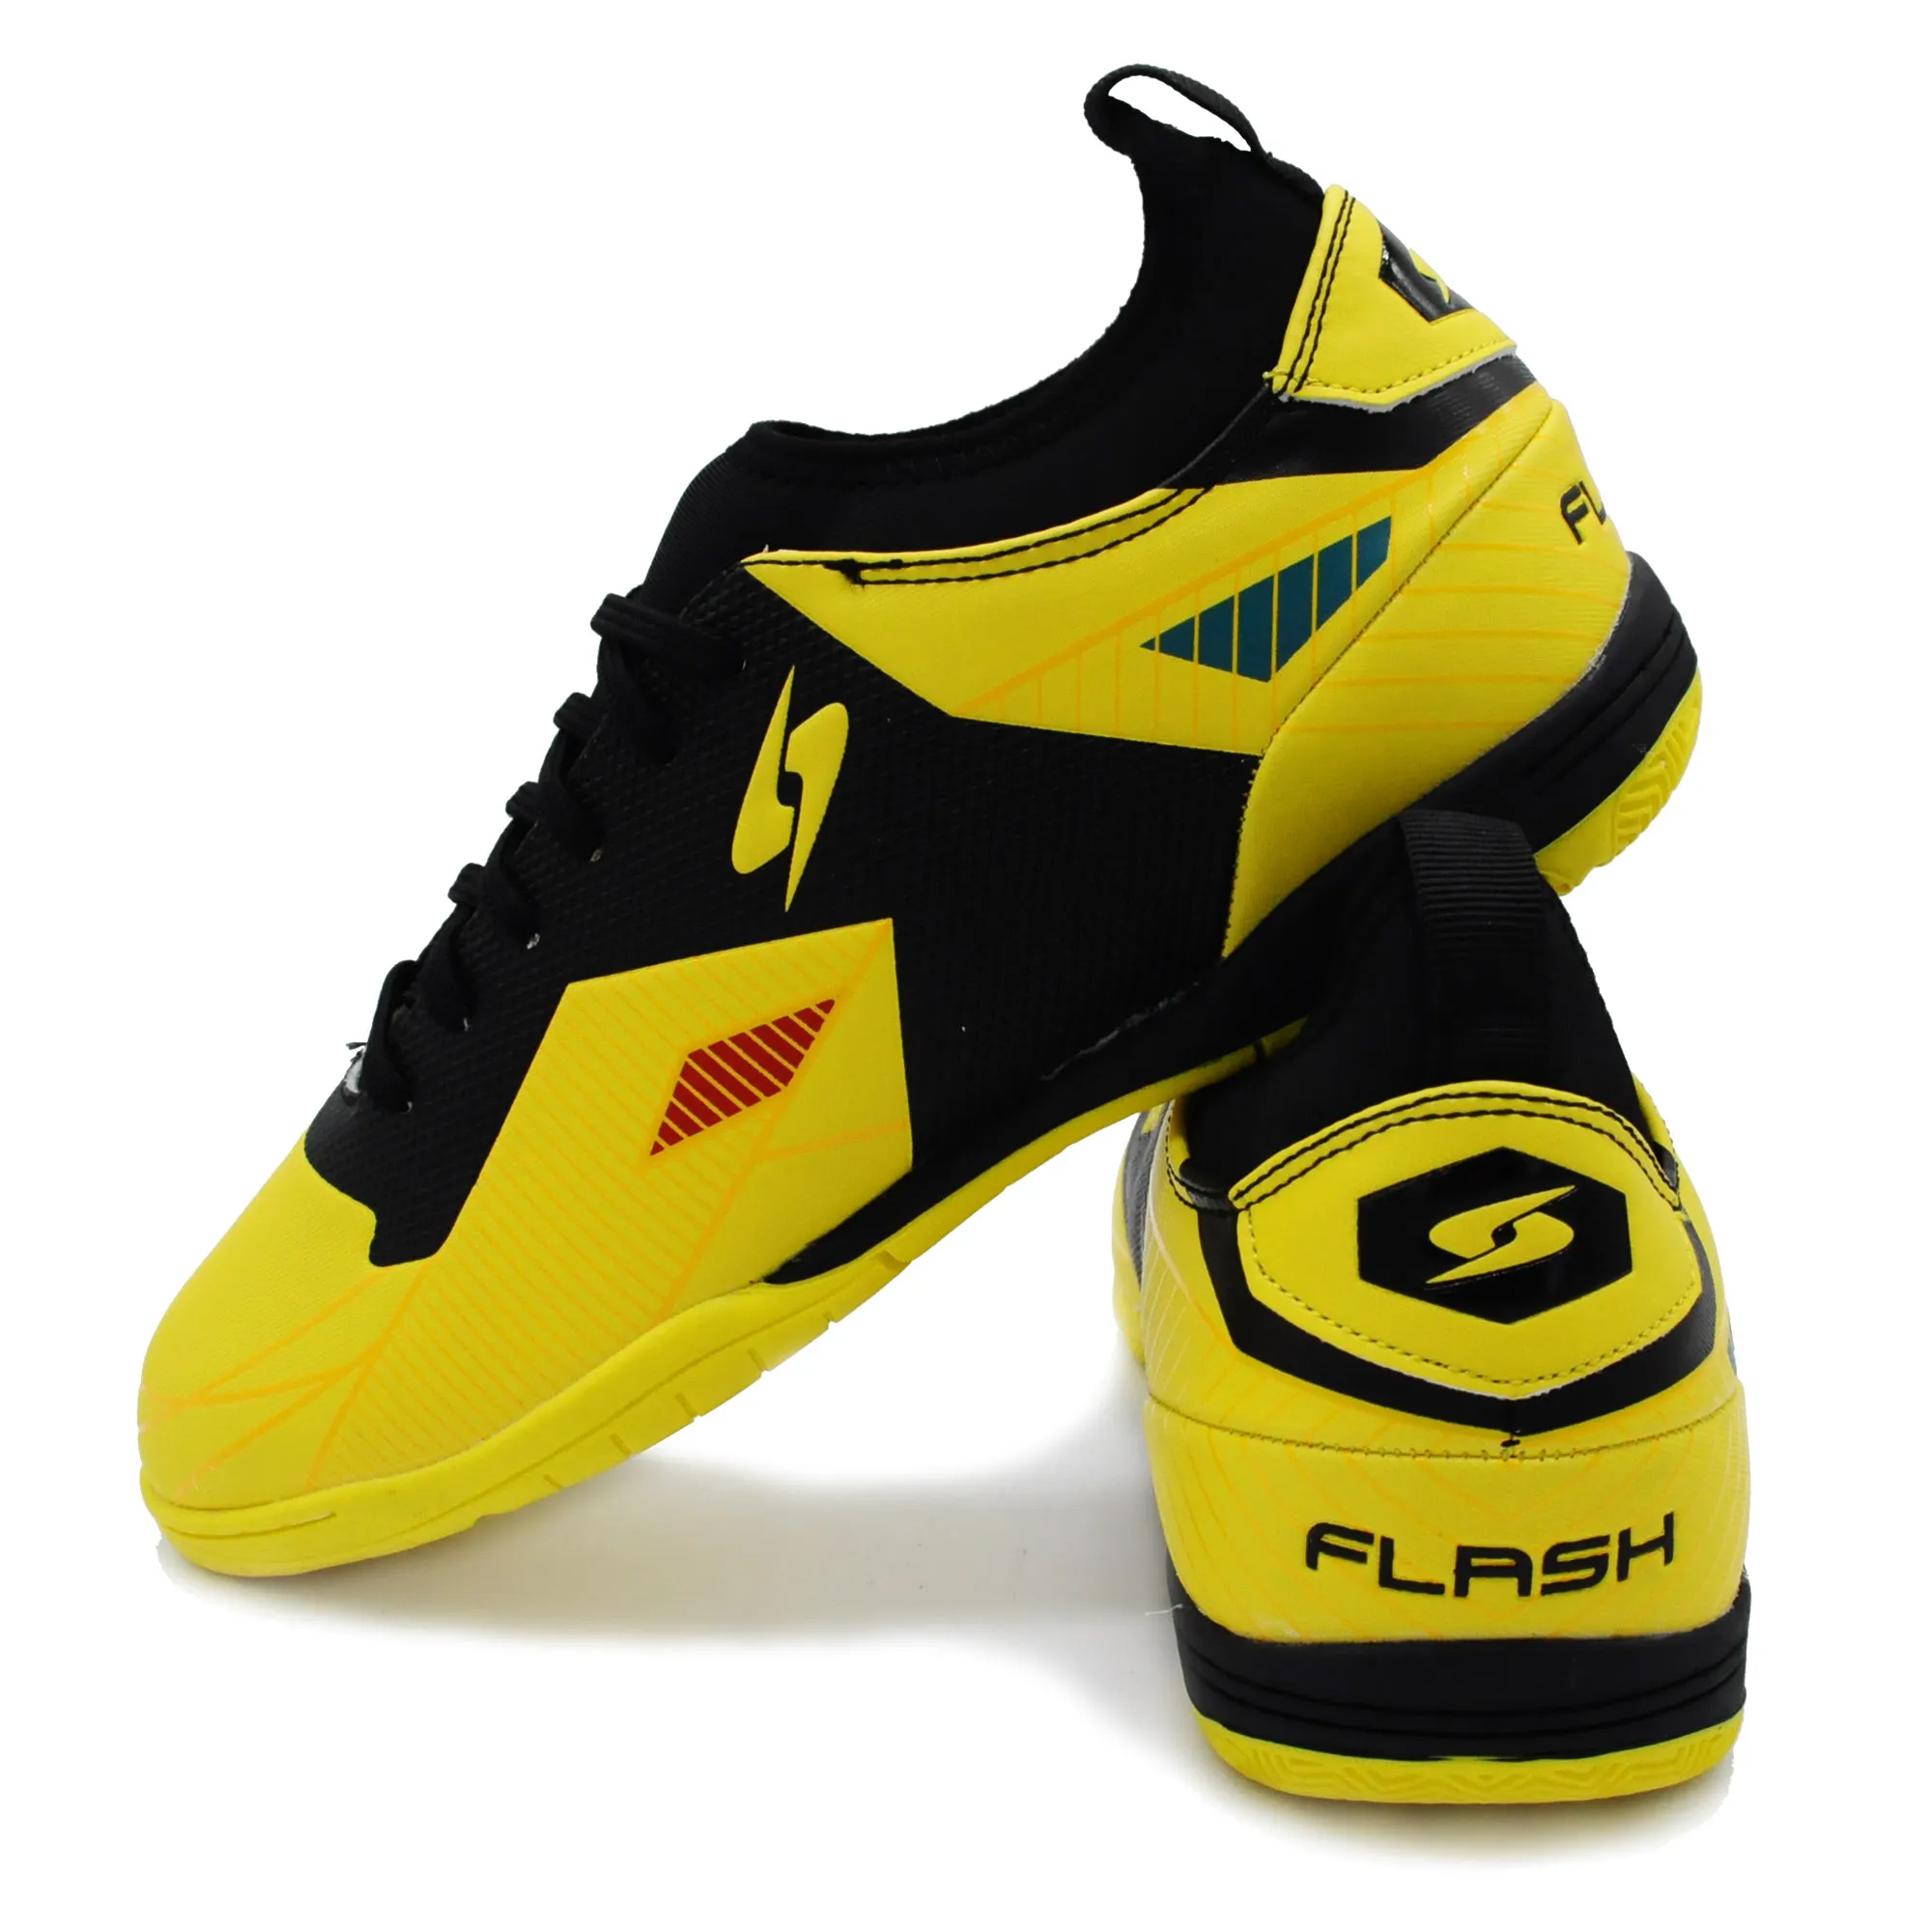 HARA Sports รองเท้าฟุตซอล รุ่น Flash รองเท้าฟุตซอลหุ้มข้อ สีเหลือง FS015